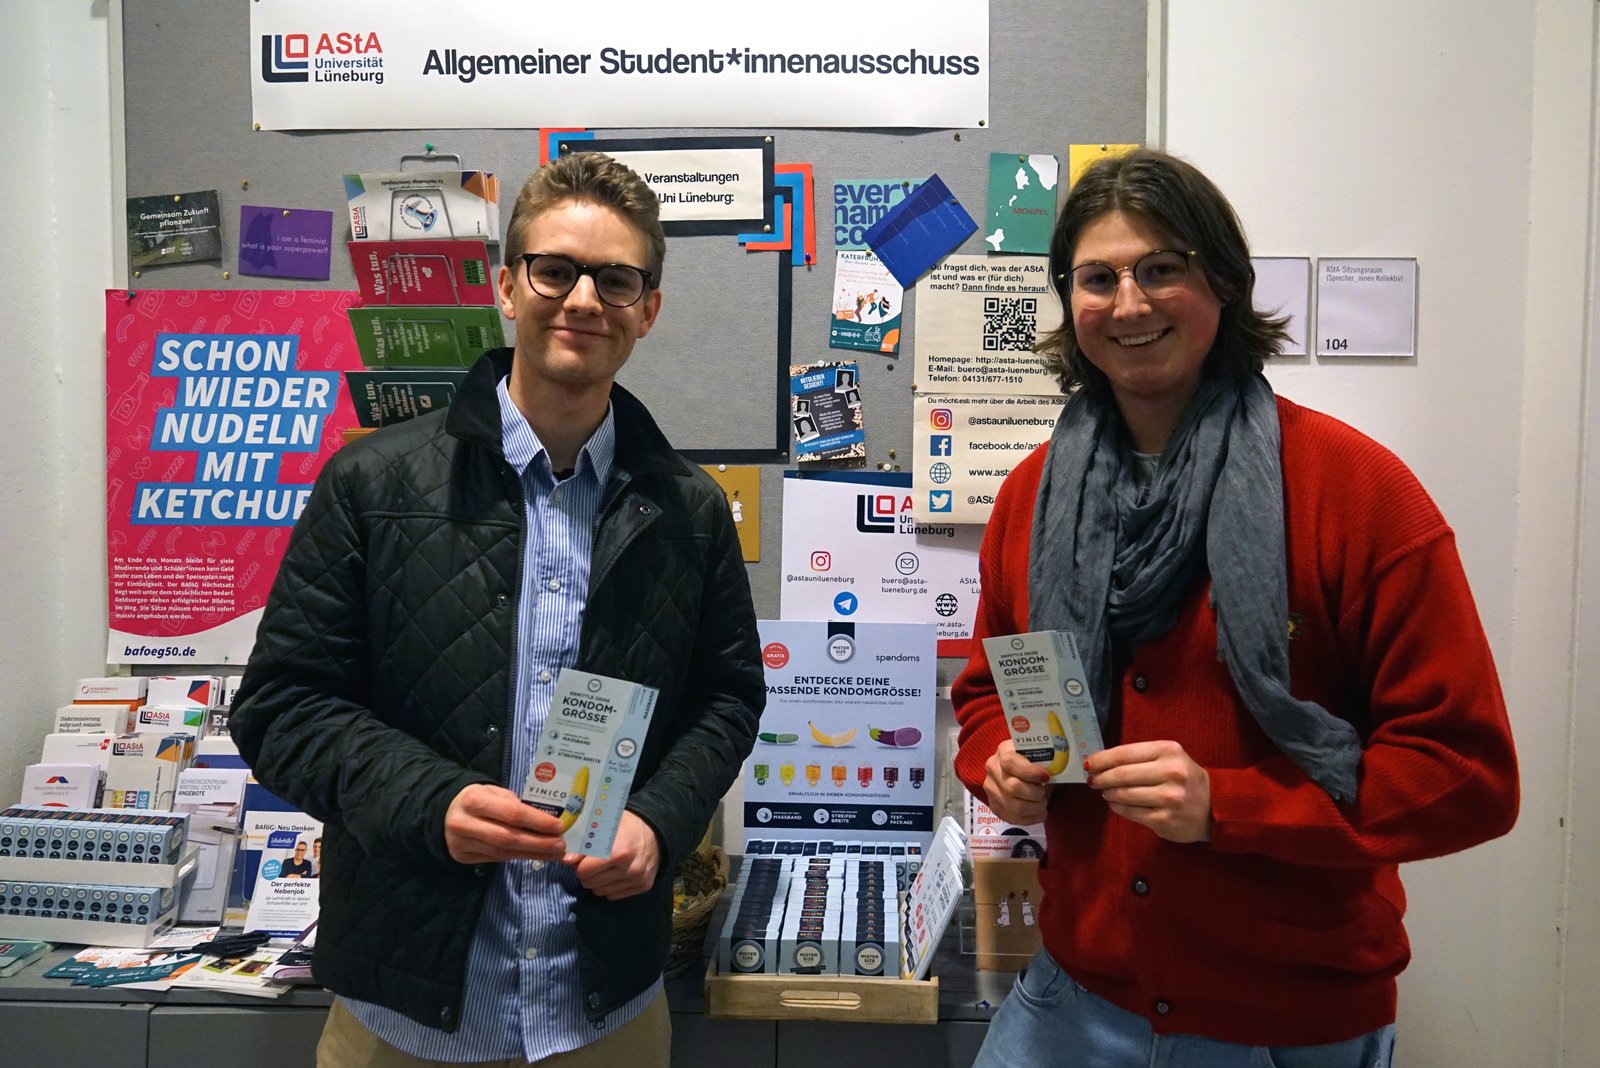 Luis iz podjetja Spondoms (levo) skupaj z Maxom iz AStA Univerze Leuphana v Lüneburgu (desno) odpre brezplačni avtomat za kondome.